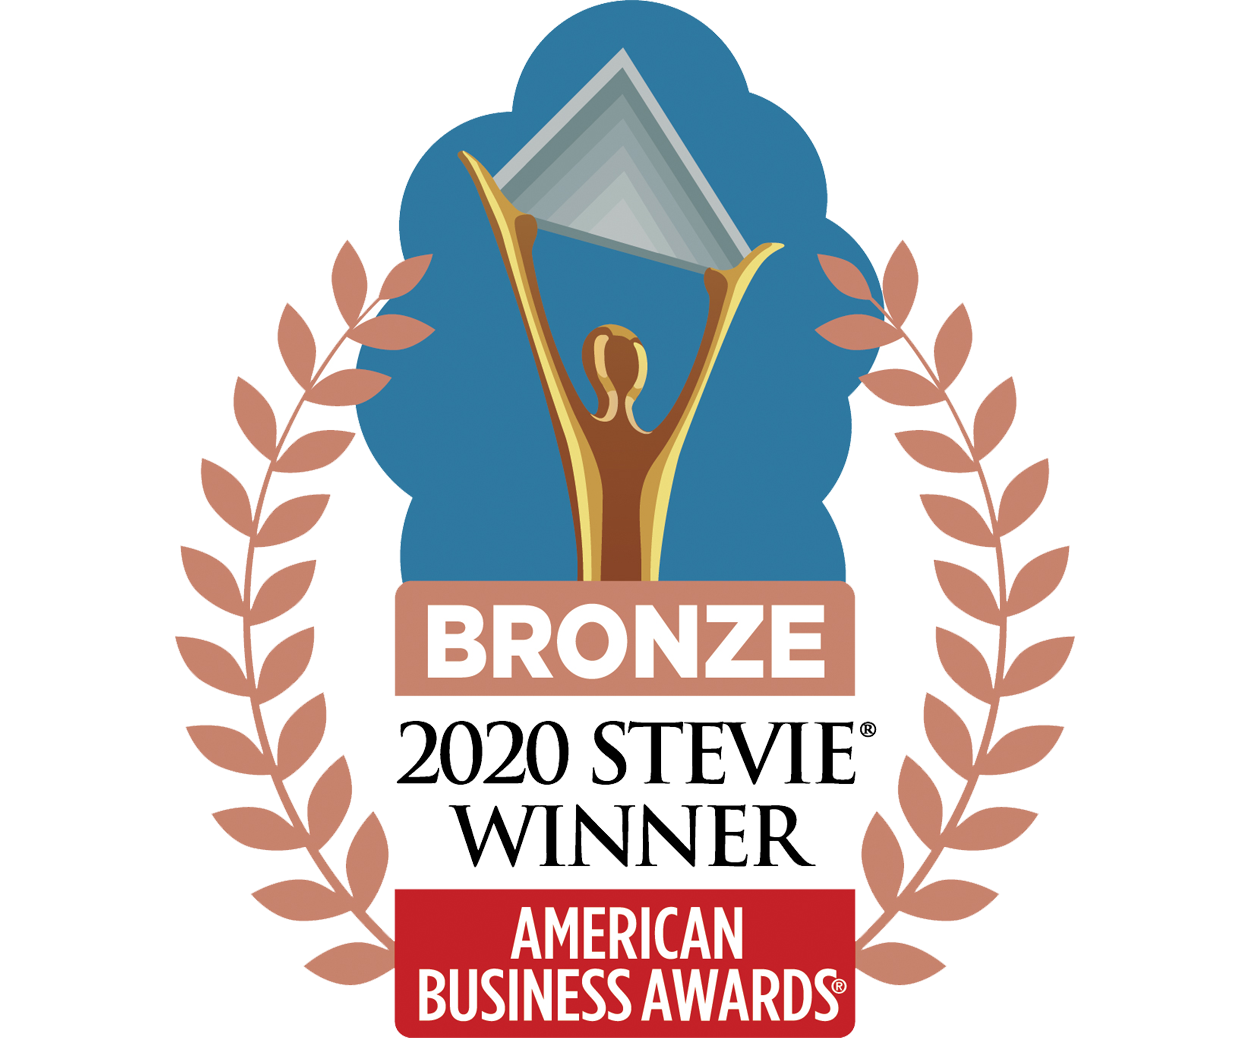 Bronze - 2020 Stevie Winner logo - American Business Awards